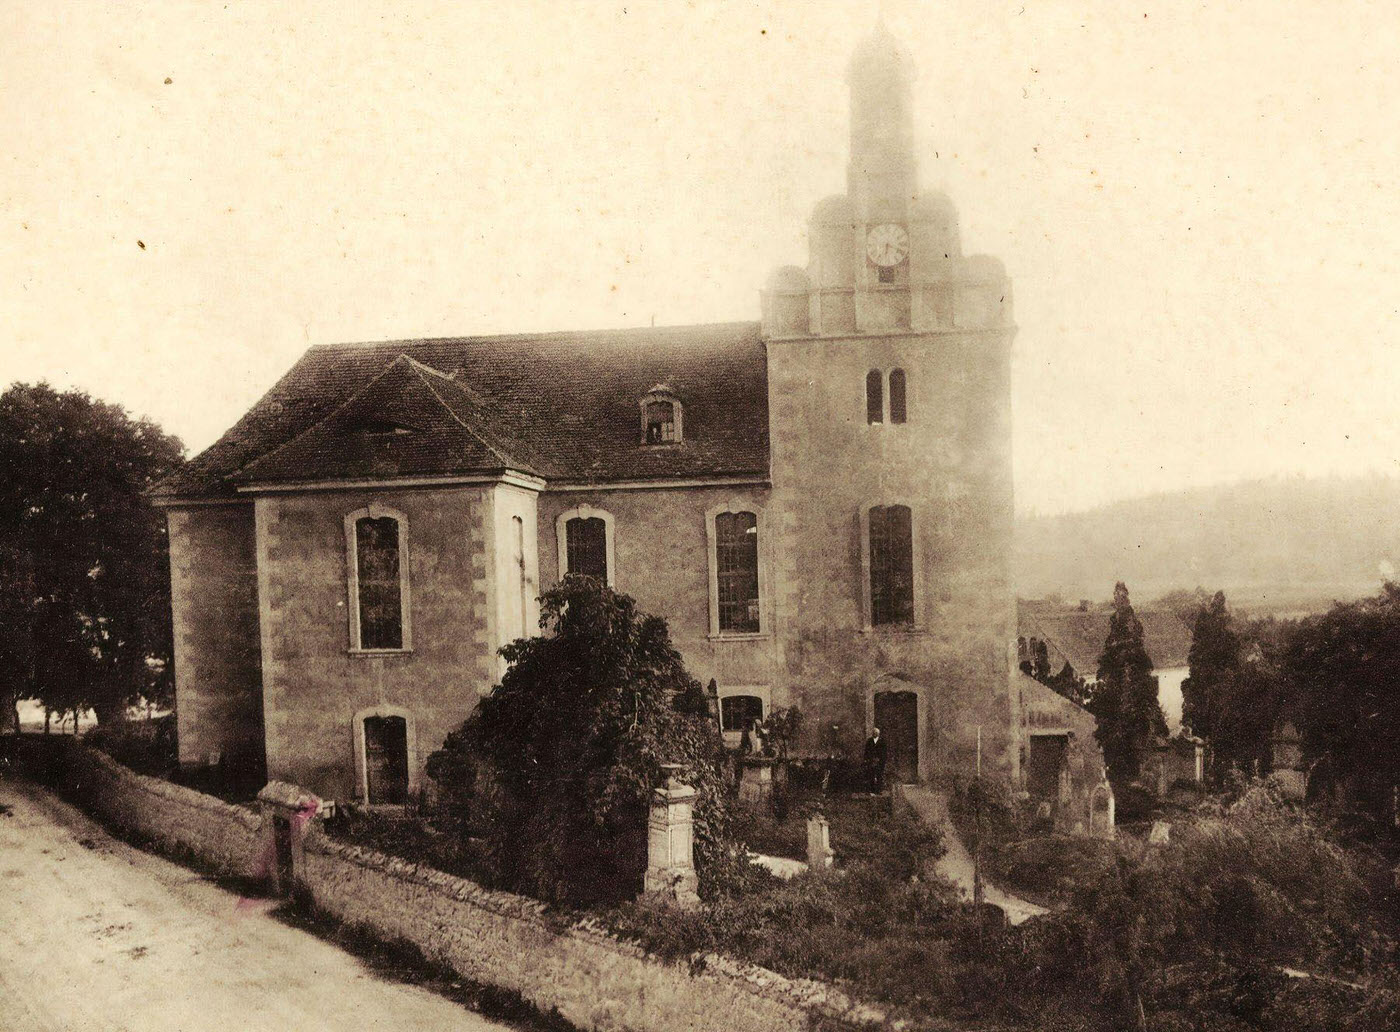 Churches in Landkreis Meissen, Germany, 1899.